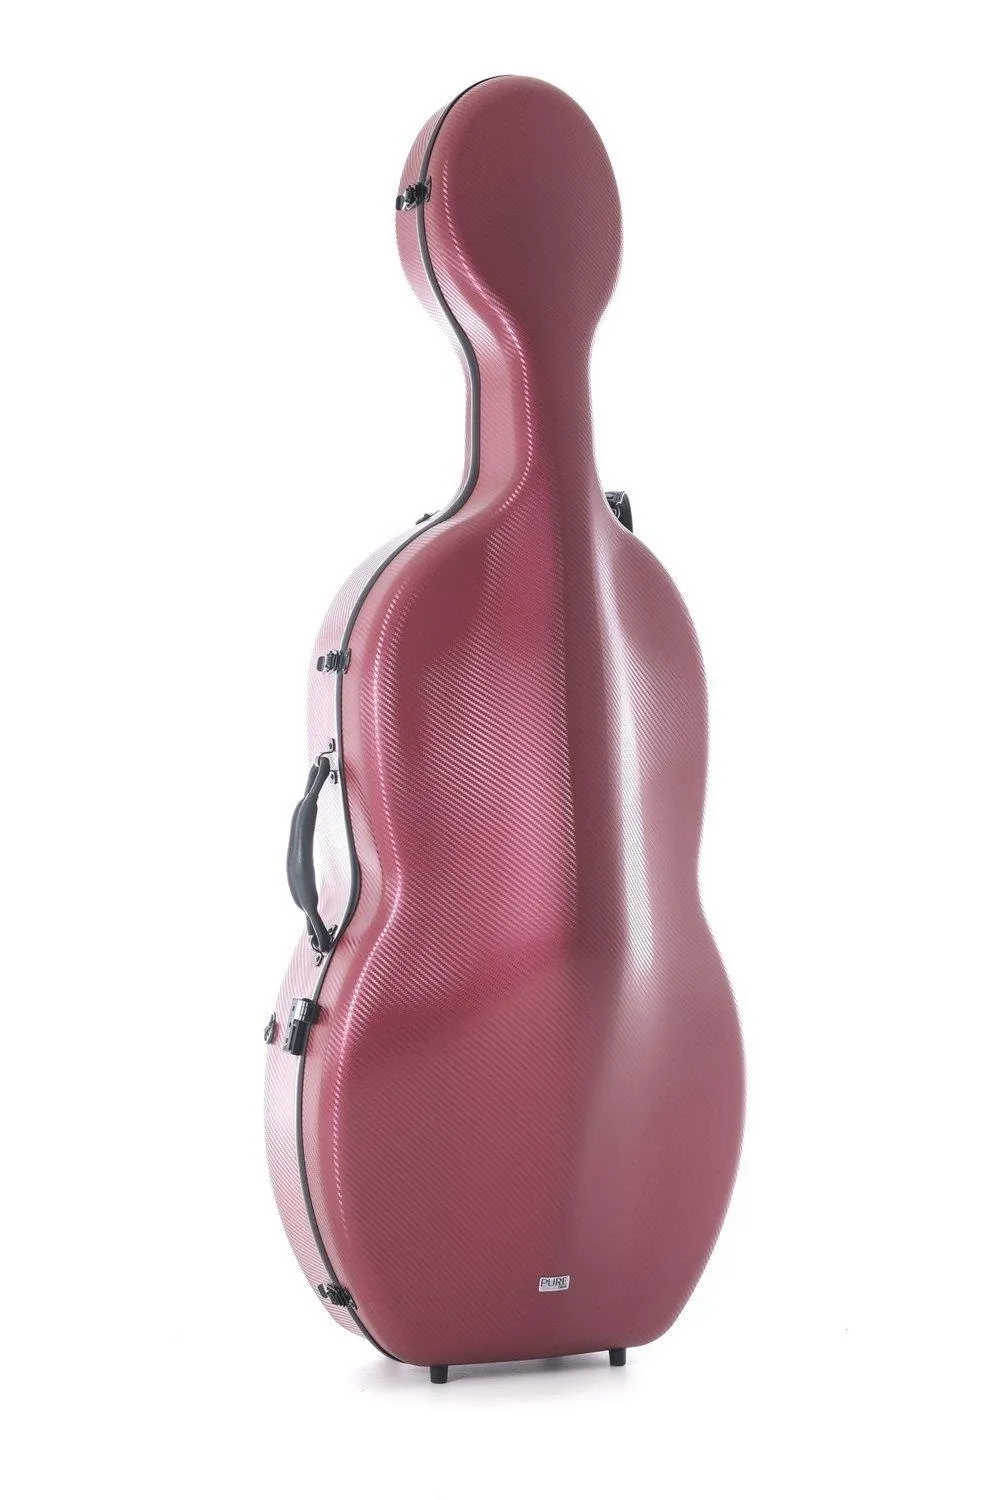 GEWA Pure Polycarbonat 4/4 Cello (Violoncello) Koffer (Etui) in rot